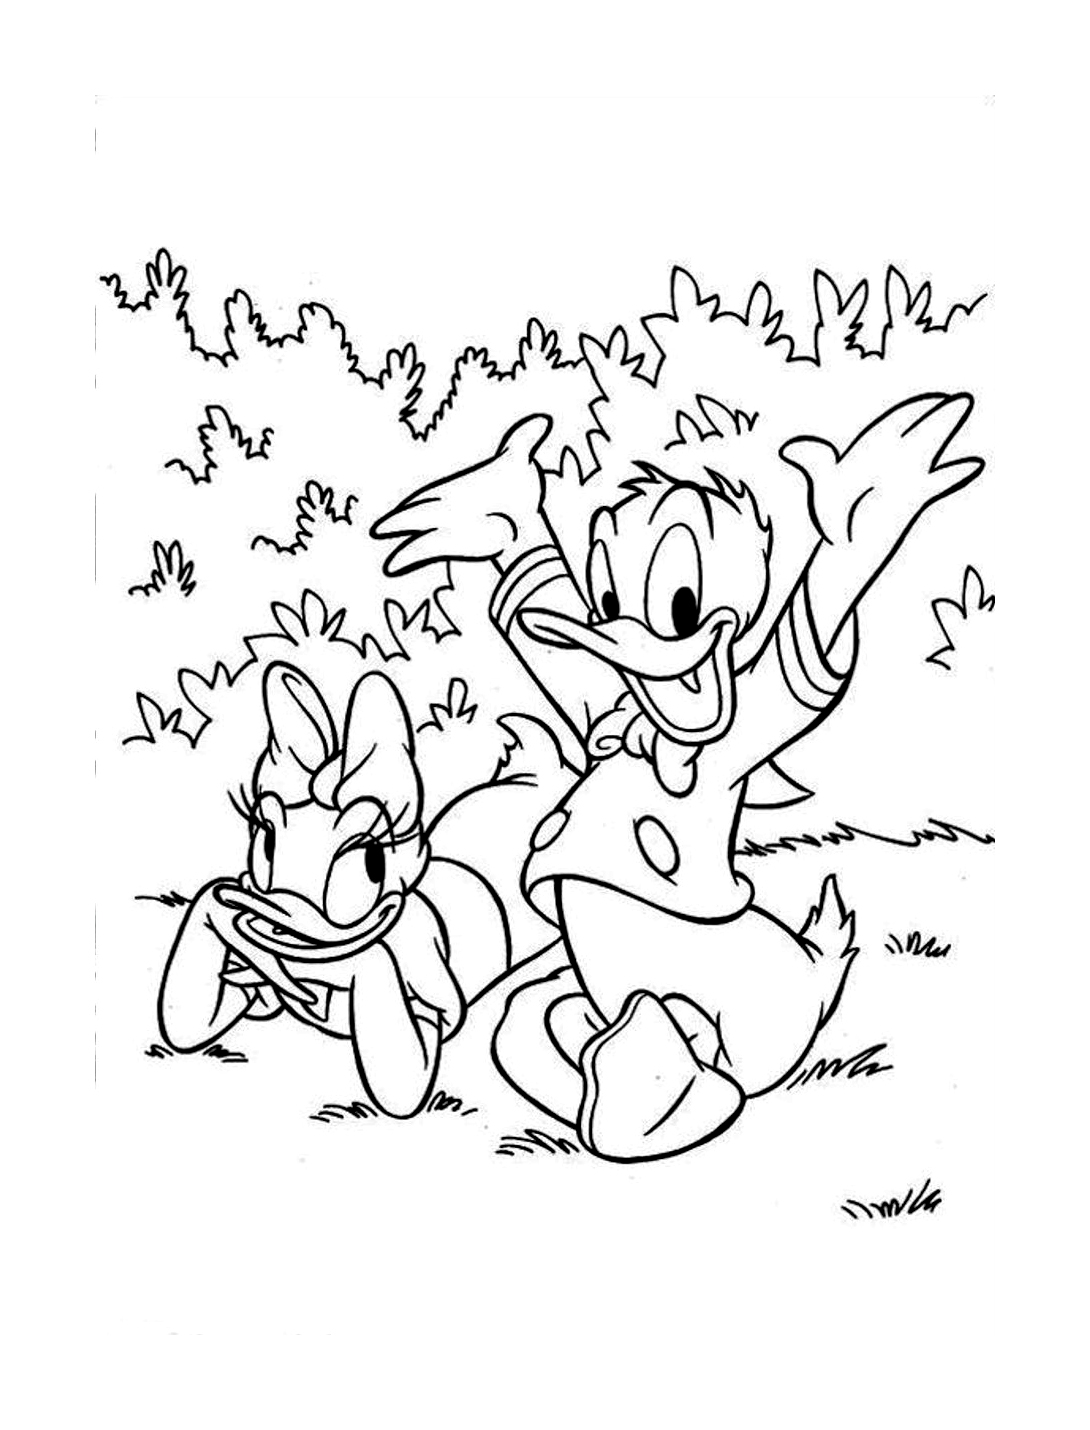 Donald y su amiga Daisy de picnic